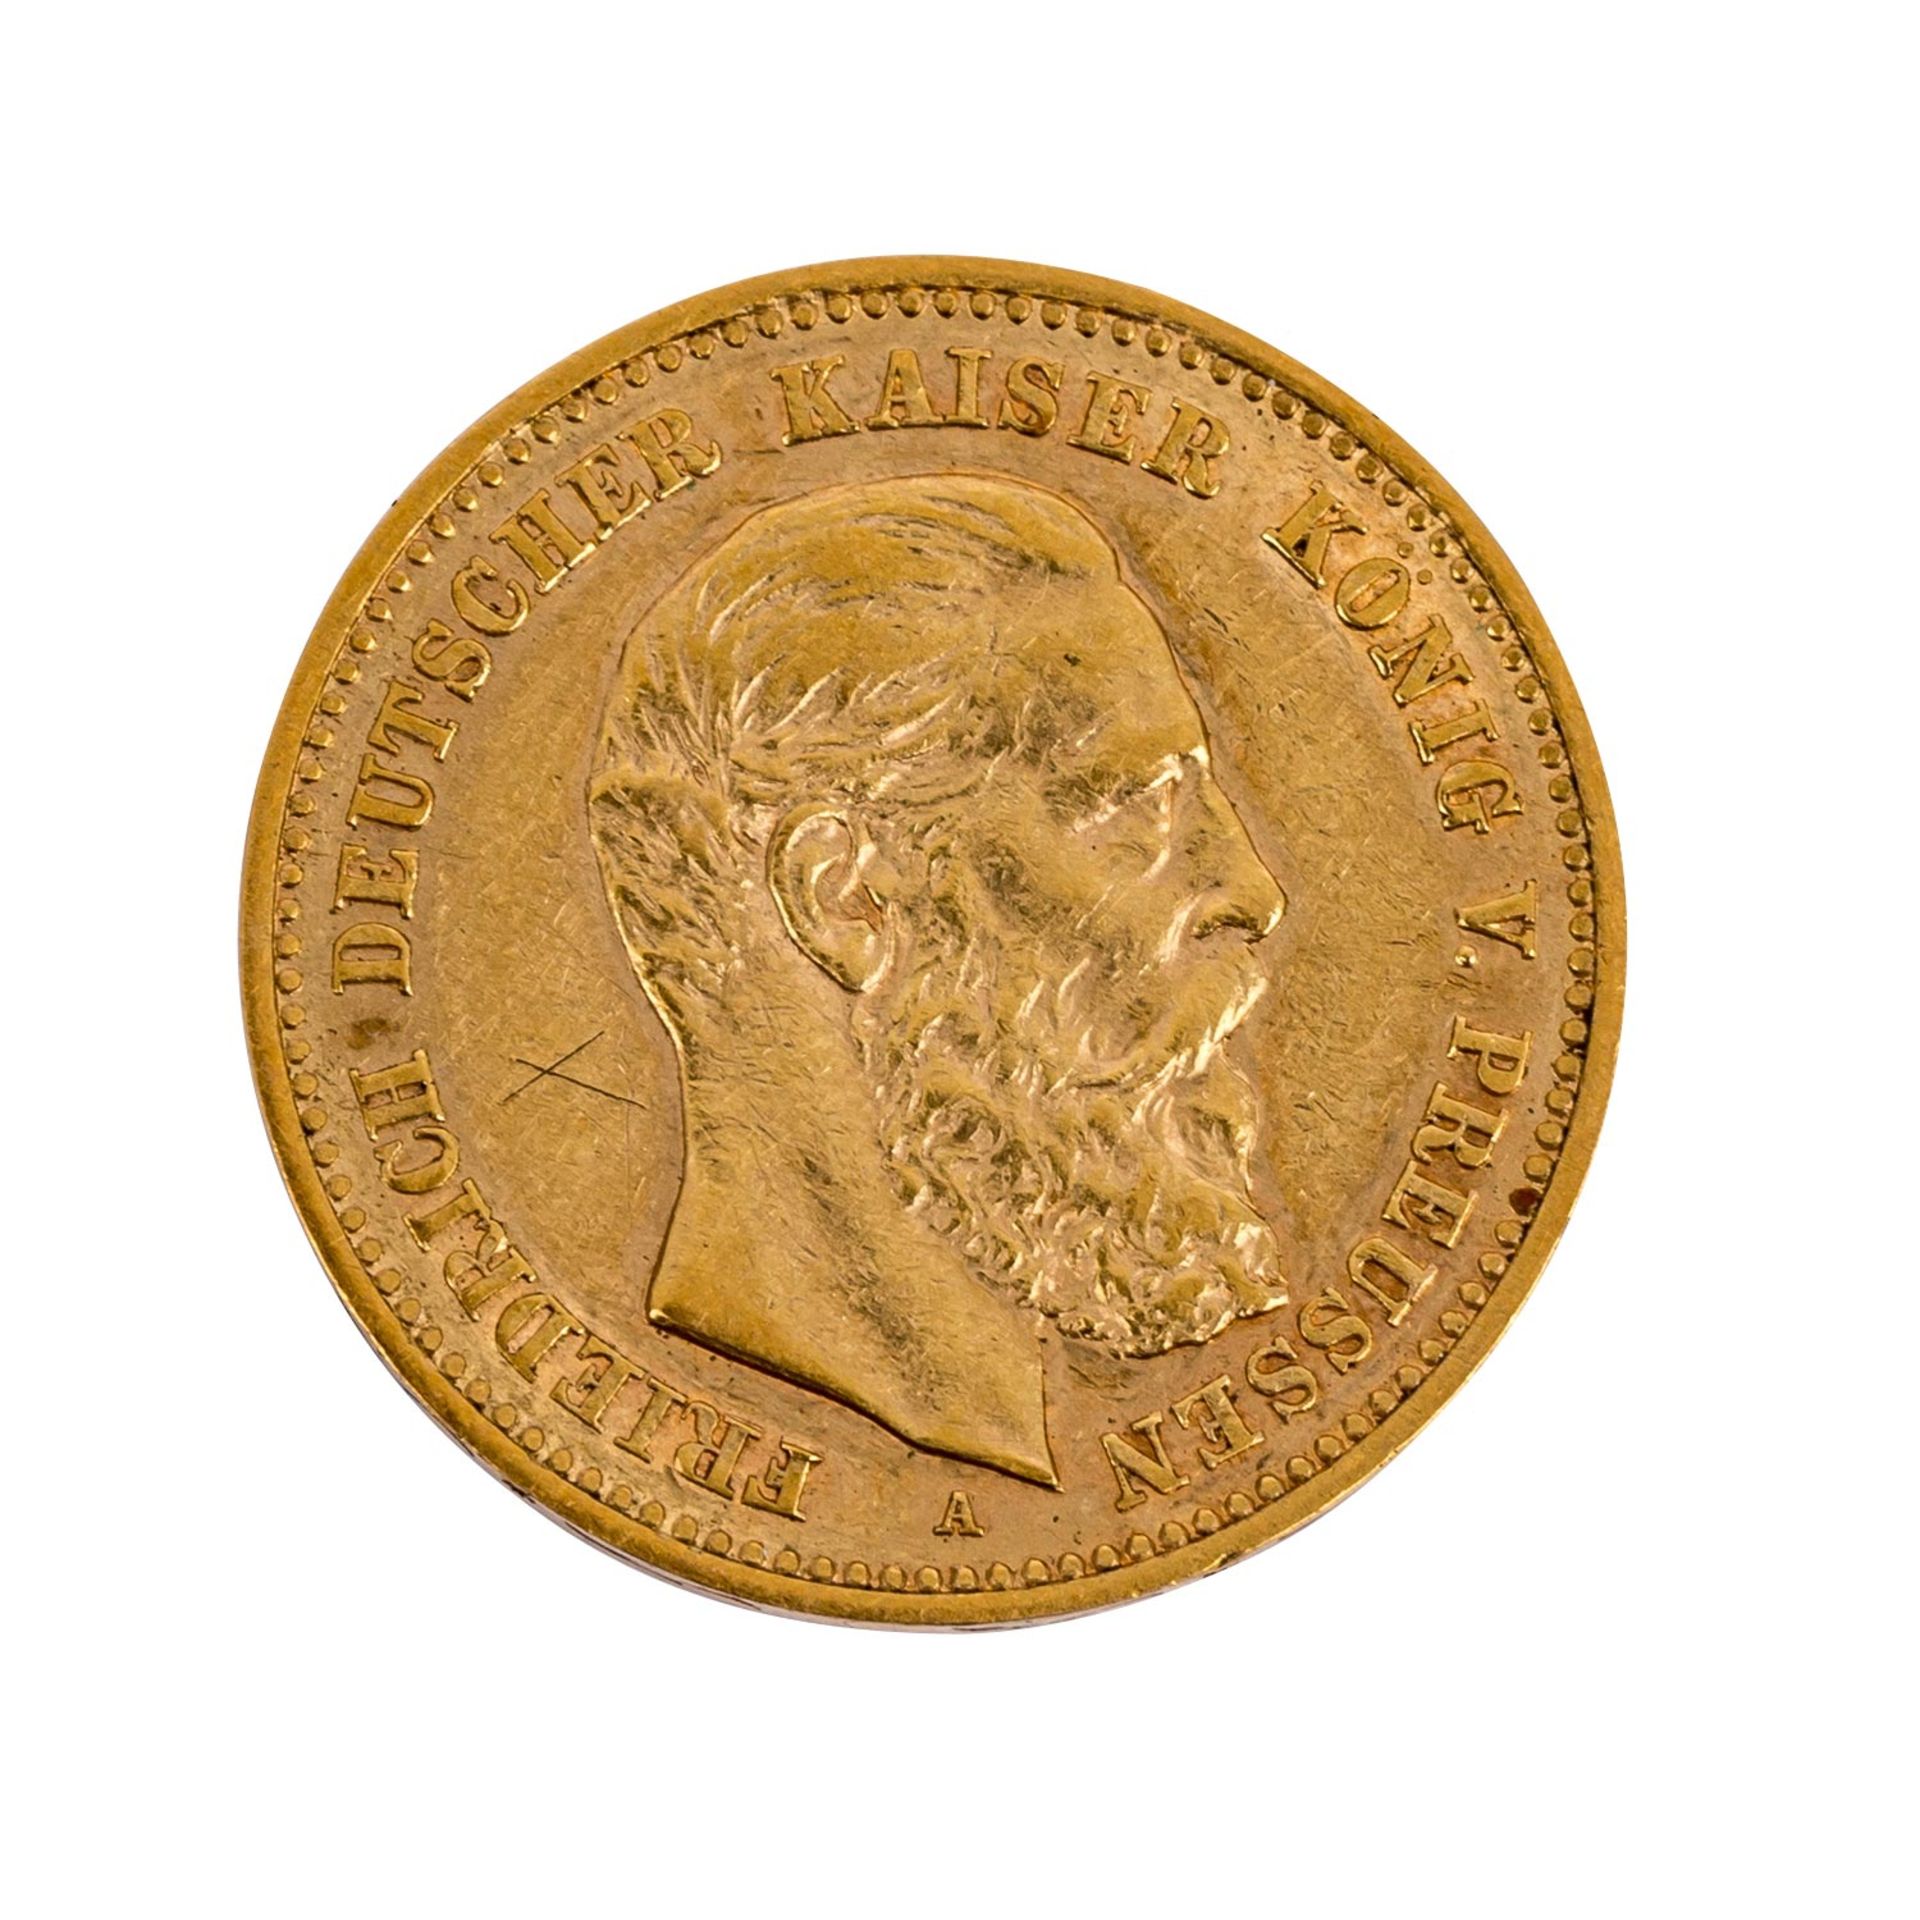 Preussen - 10 Mark Preussen, Kaiser Friedrich, GOLD ss mit Grafito "x" avers. Prussia - 10 marks